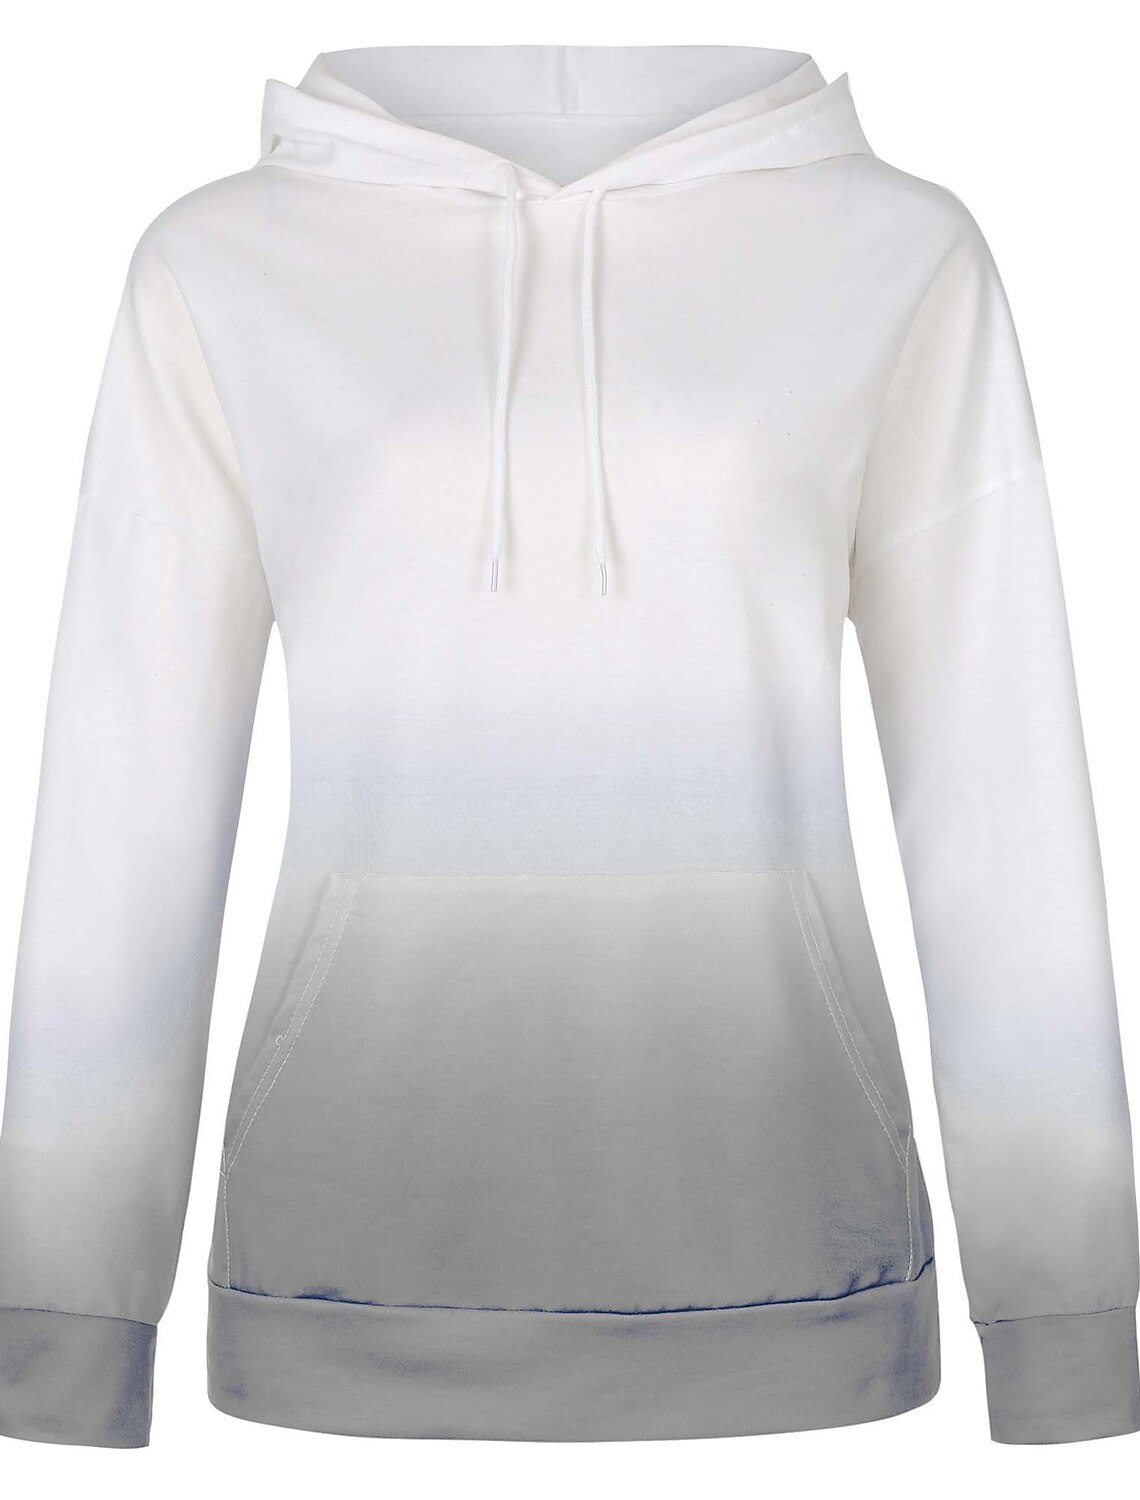 KaloryWee Winter Sale Clearance Coats Women Warm Zipper Open Hoodies Sweatshirt Long Coat Jacket Tops Outwear